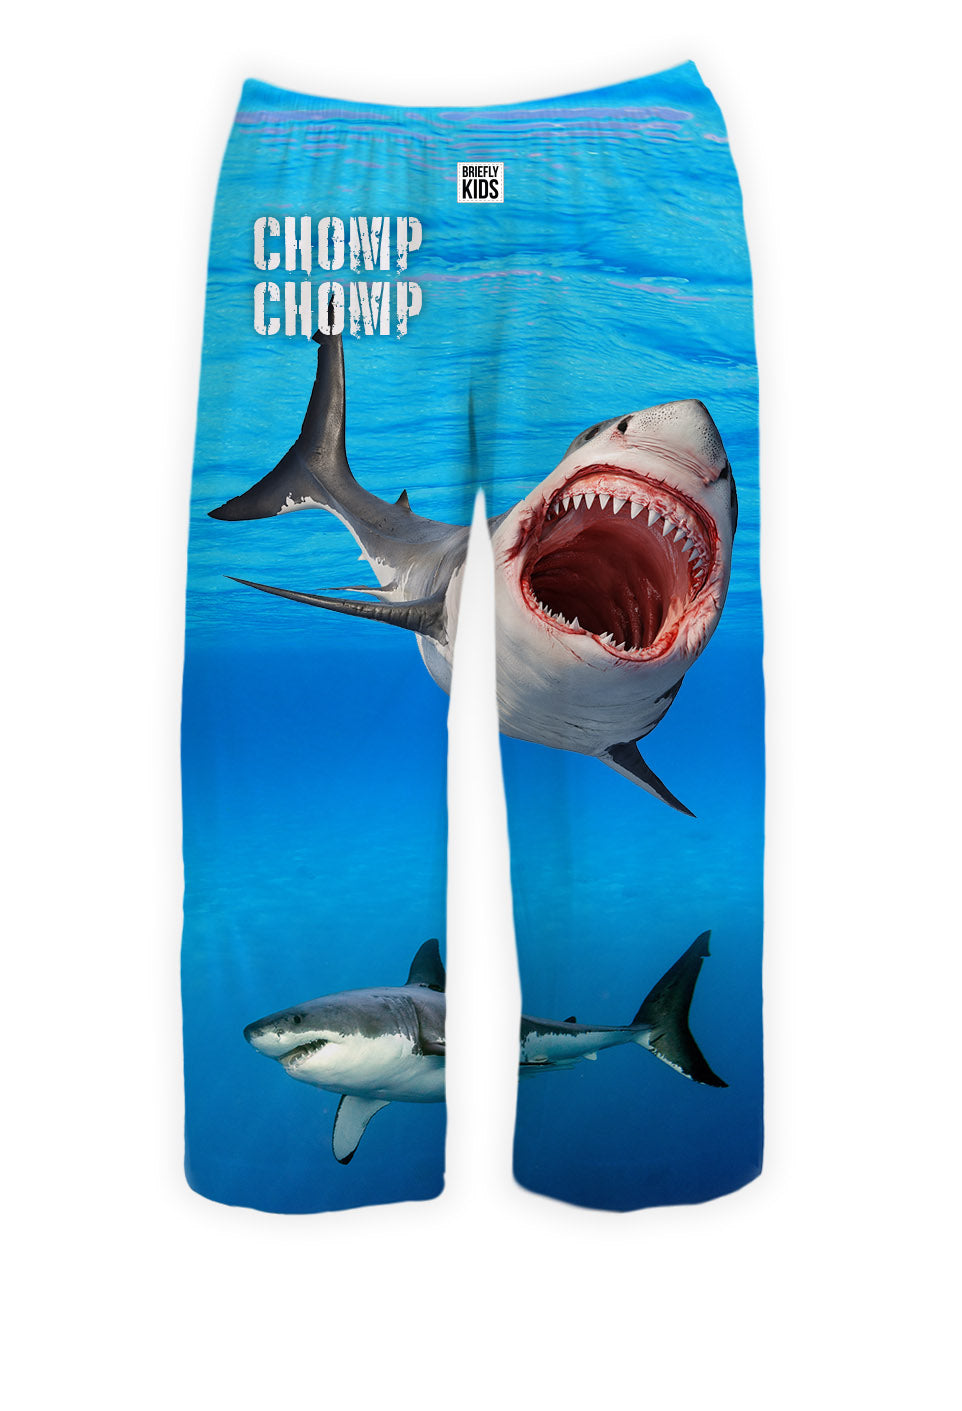 BRIEF INSANITY Chomp Chomp Shark Kids Pajama Lounge Pants